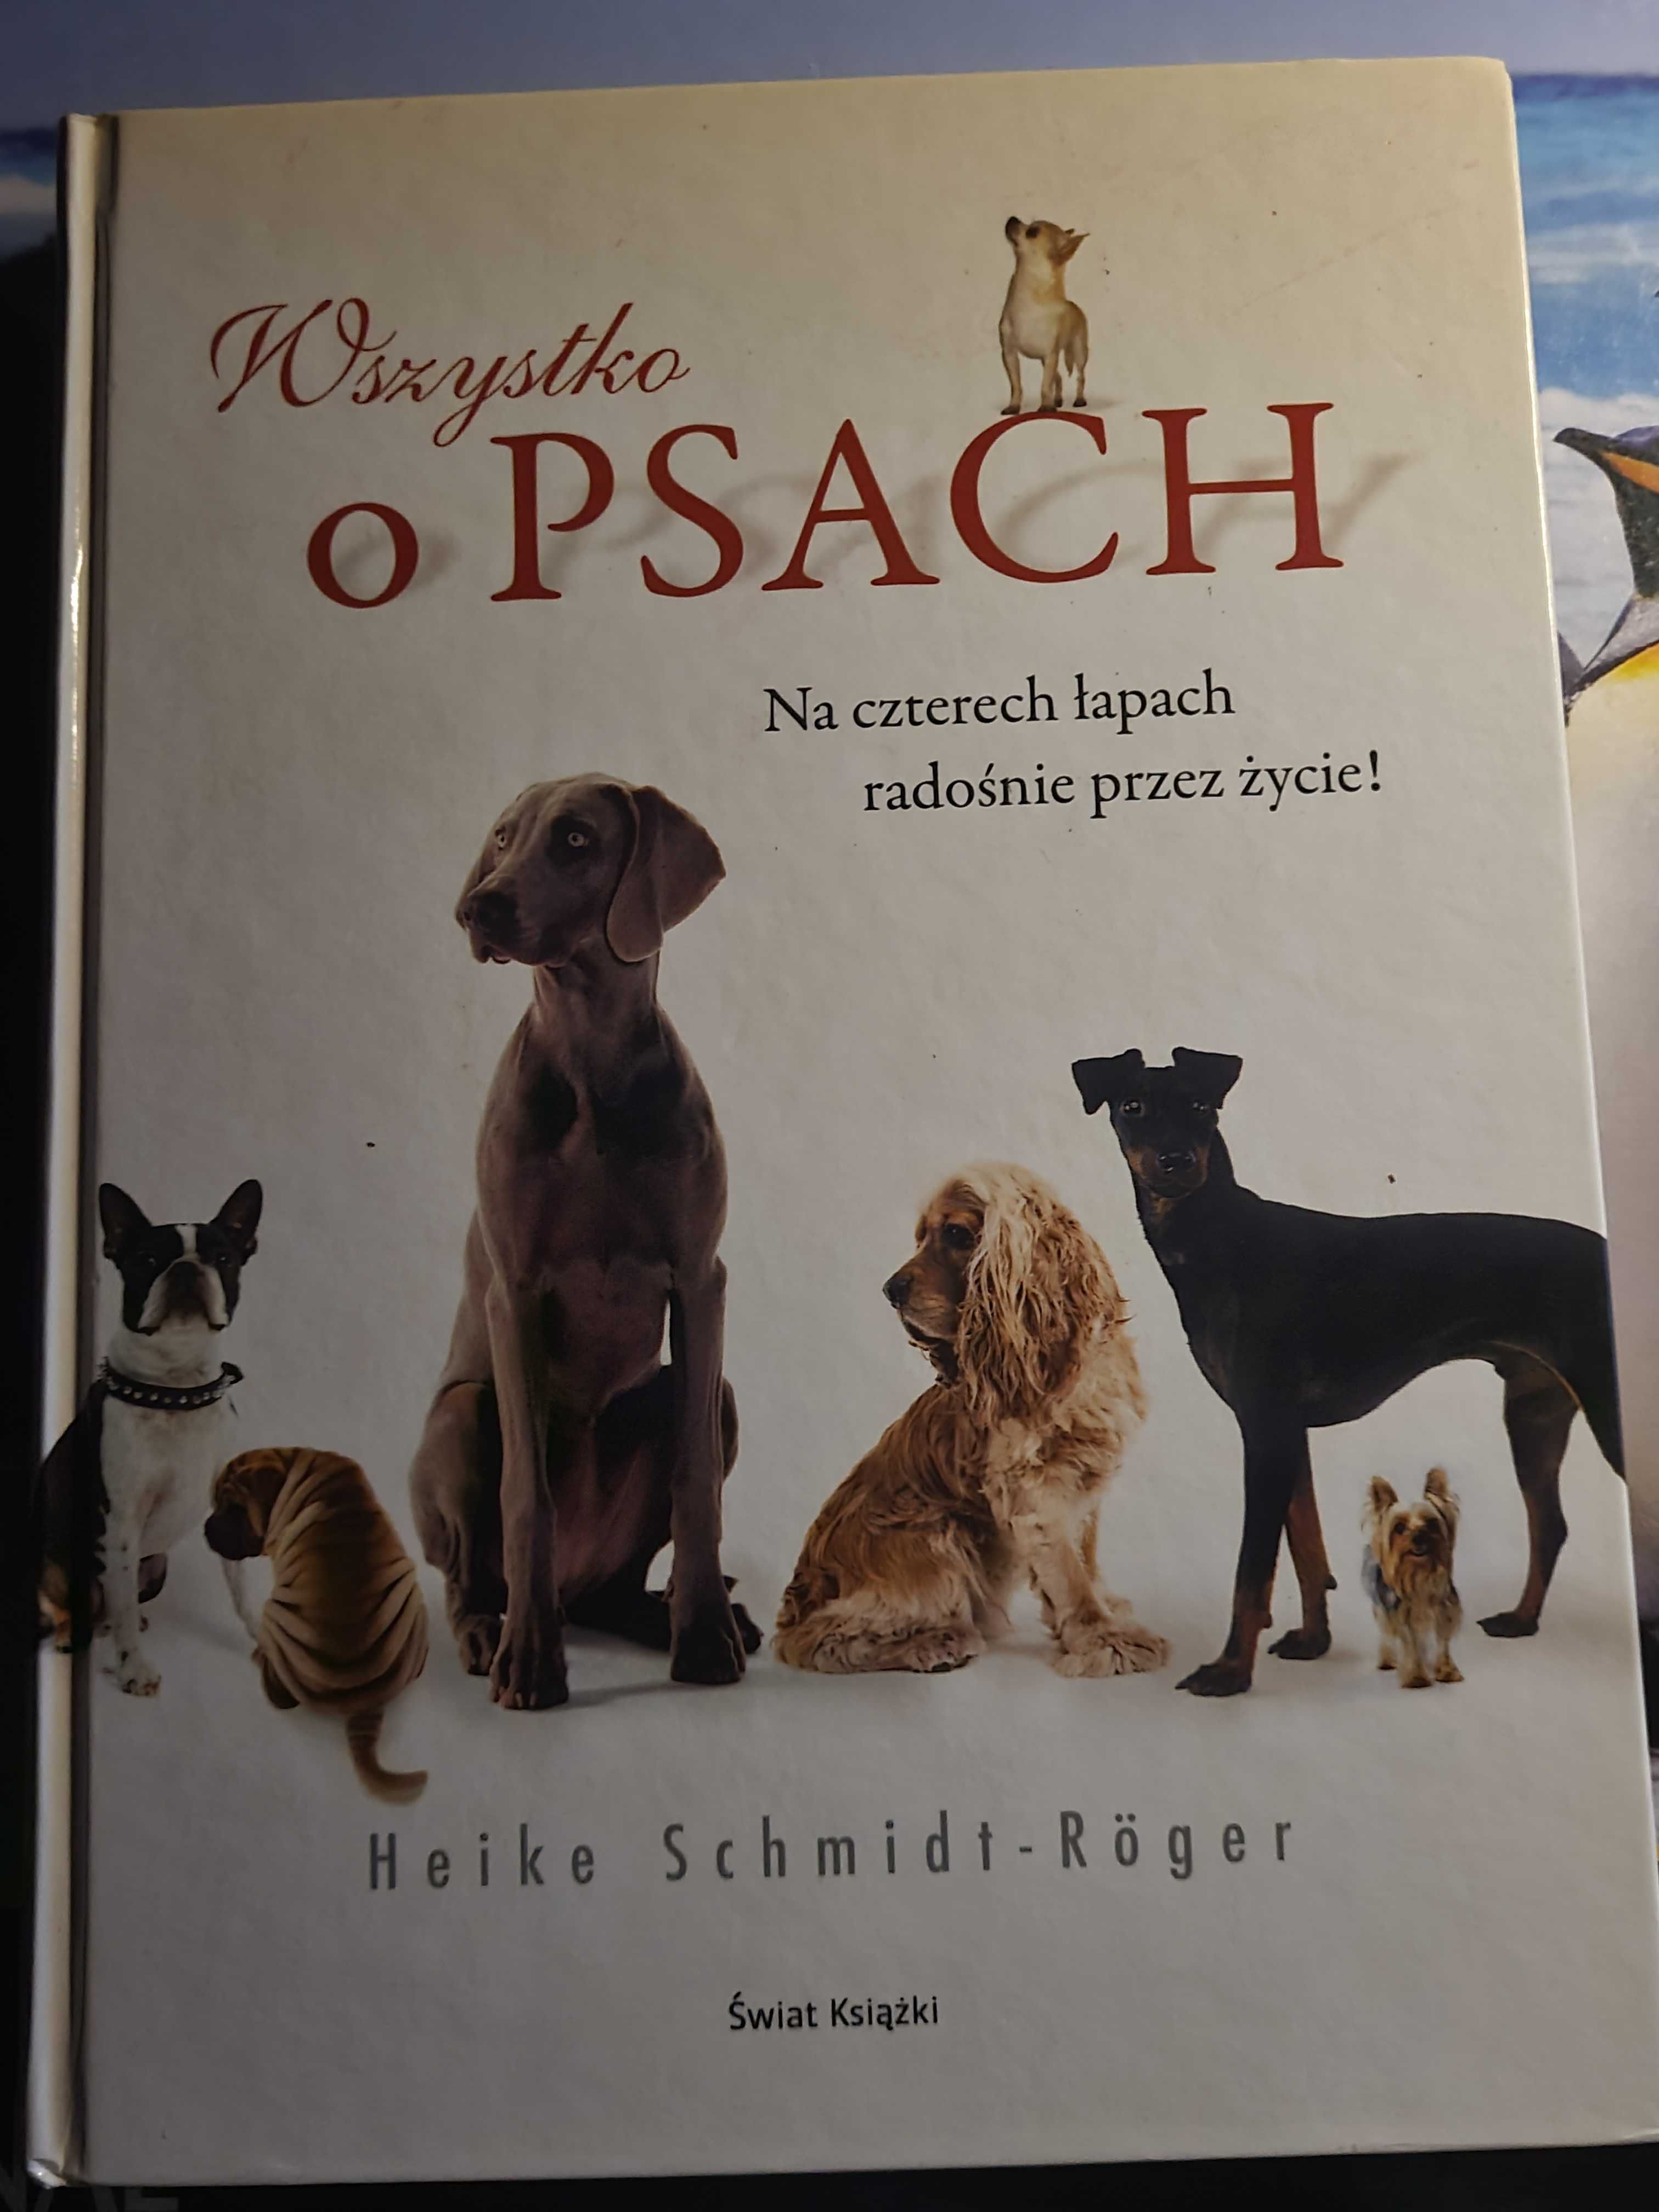 Książka "Wszystko o Psach"